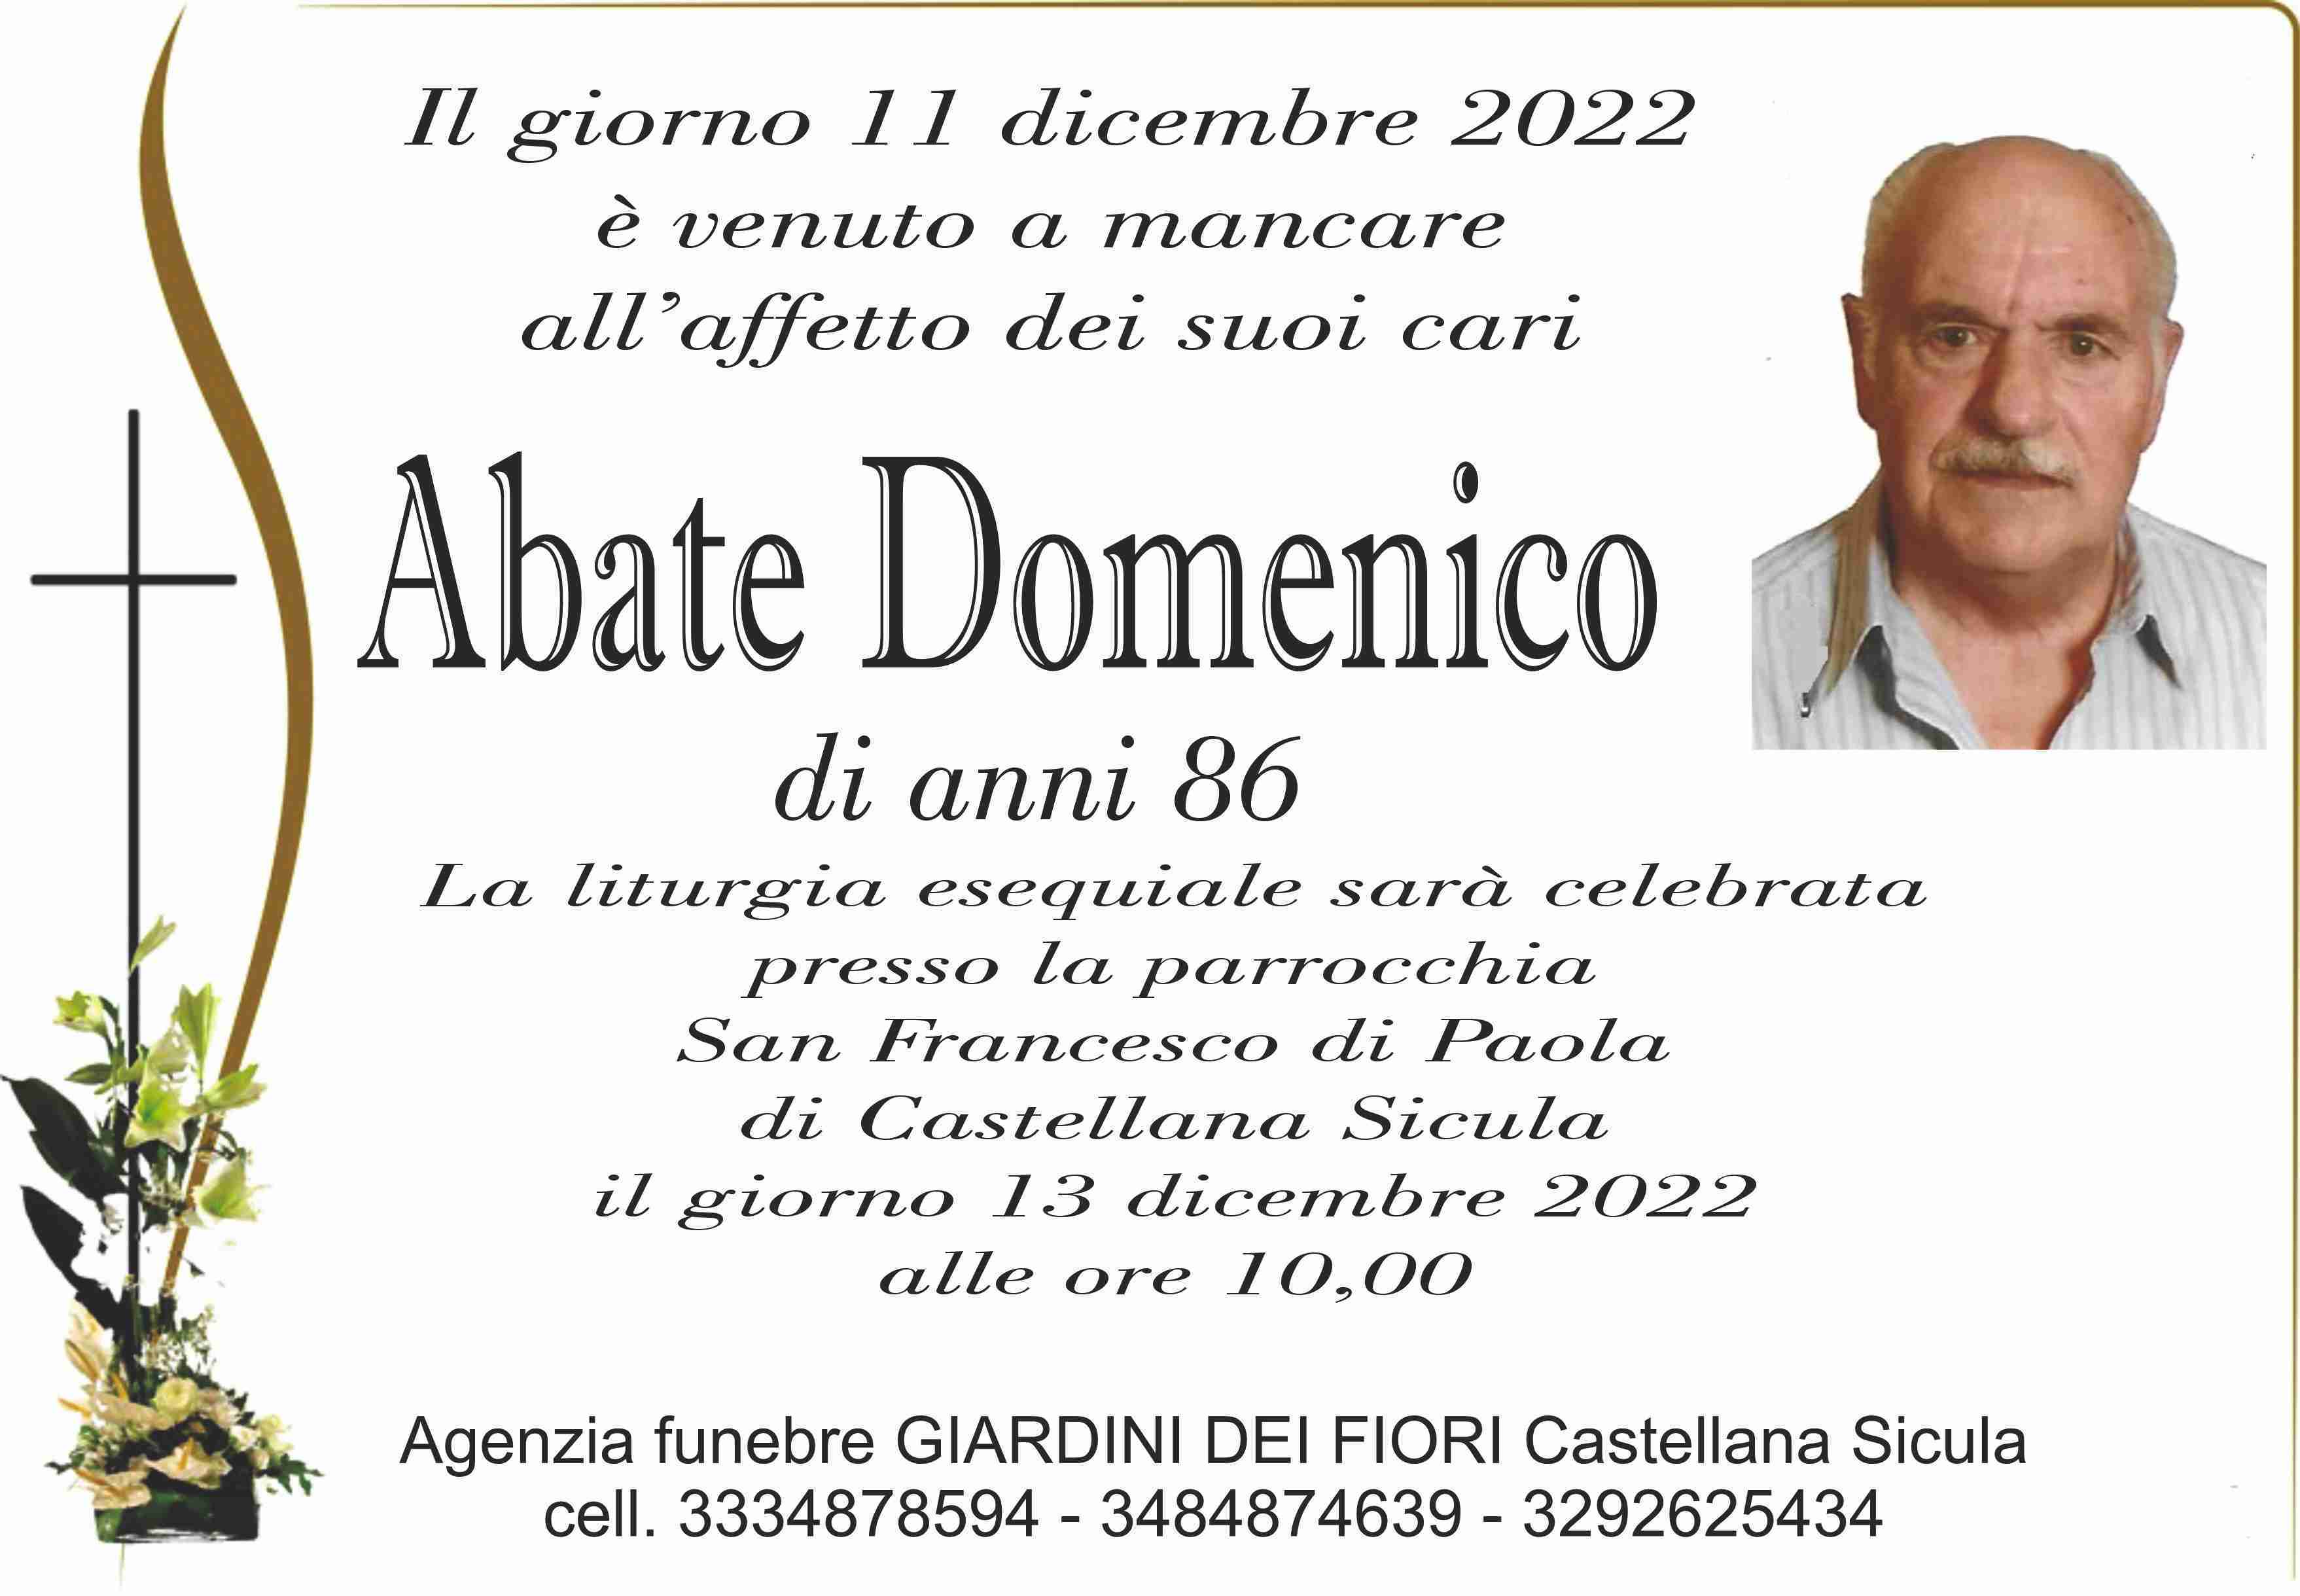 Domenico Abate